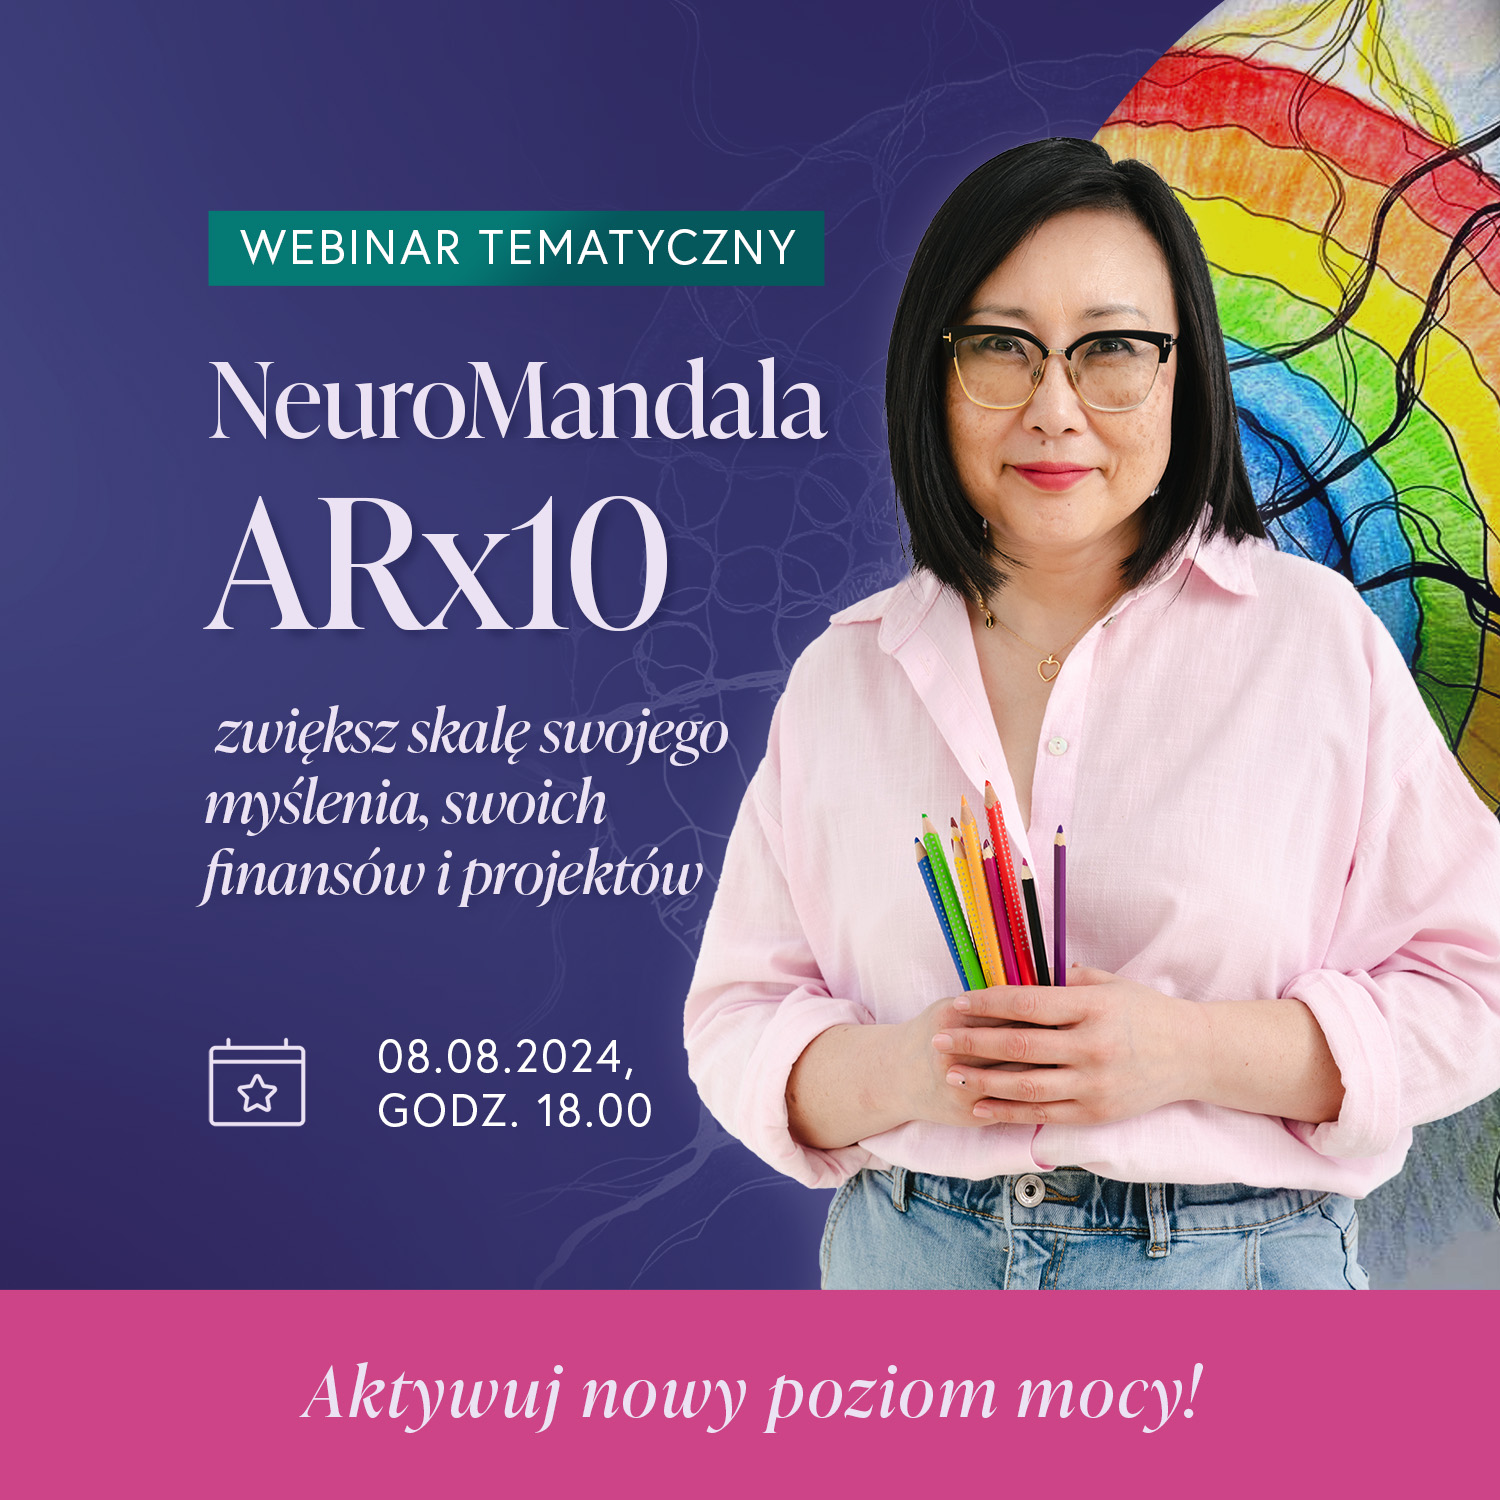 Webinar „NeuroMandala ARx10”